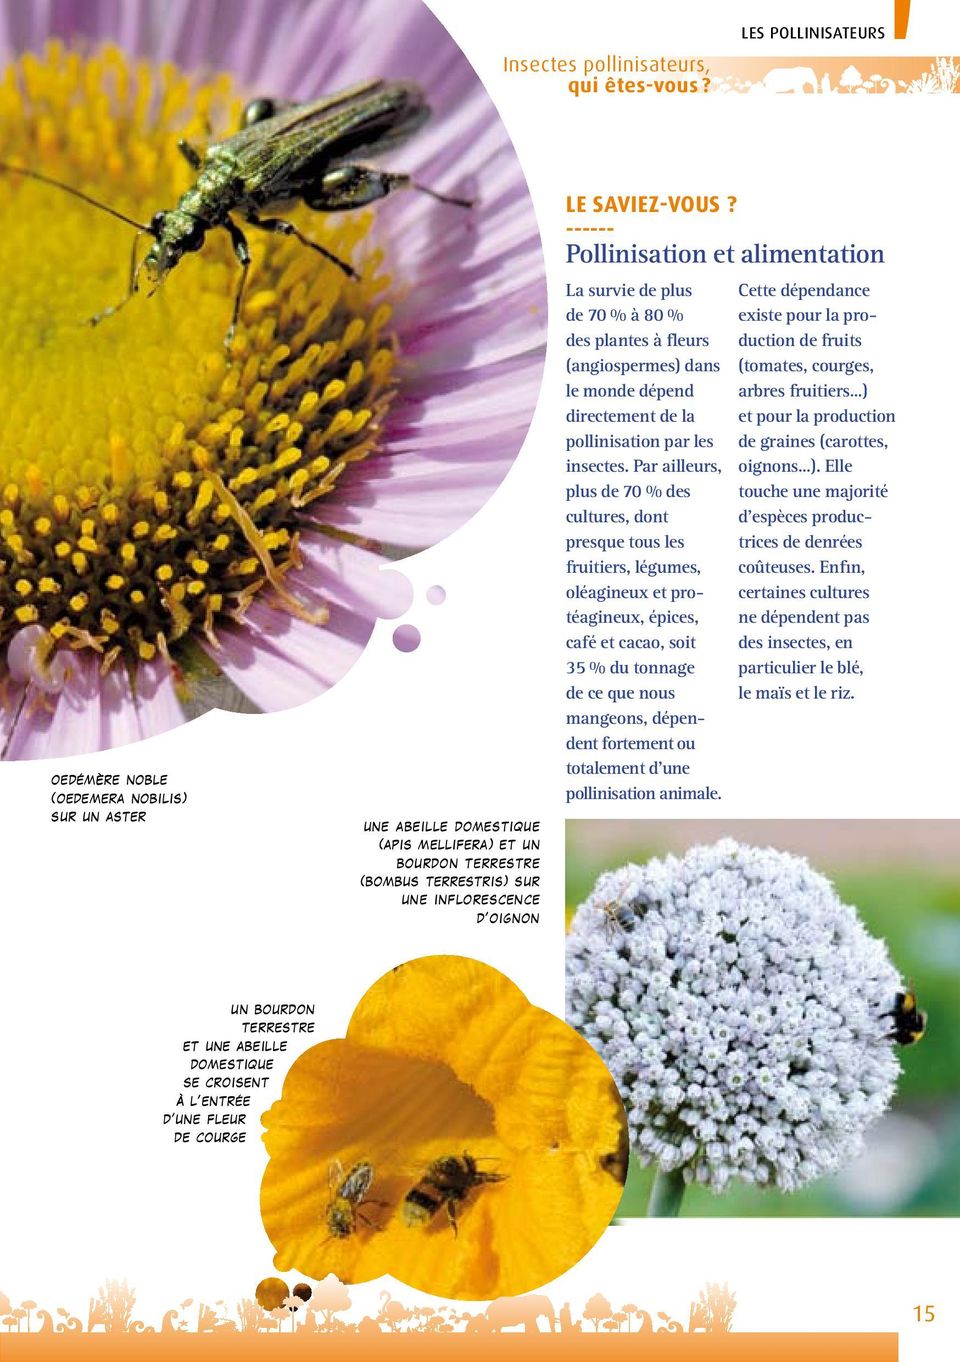 ------ Pollinisation et alimentation La survie de plus de 70 % à 80 % des plantes à fleurs (angiospermes) dans le monde dépend directement de la pollinisation par les insectes.